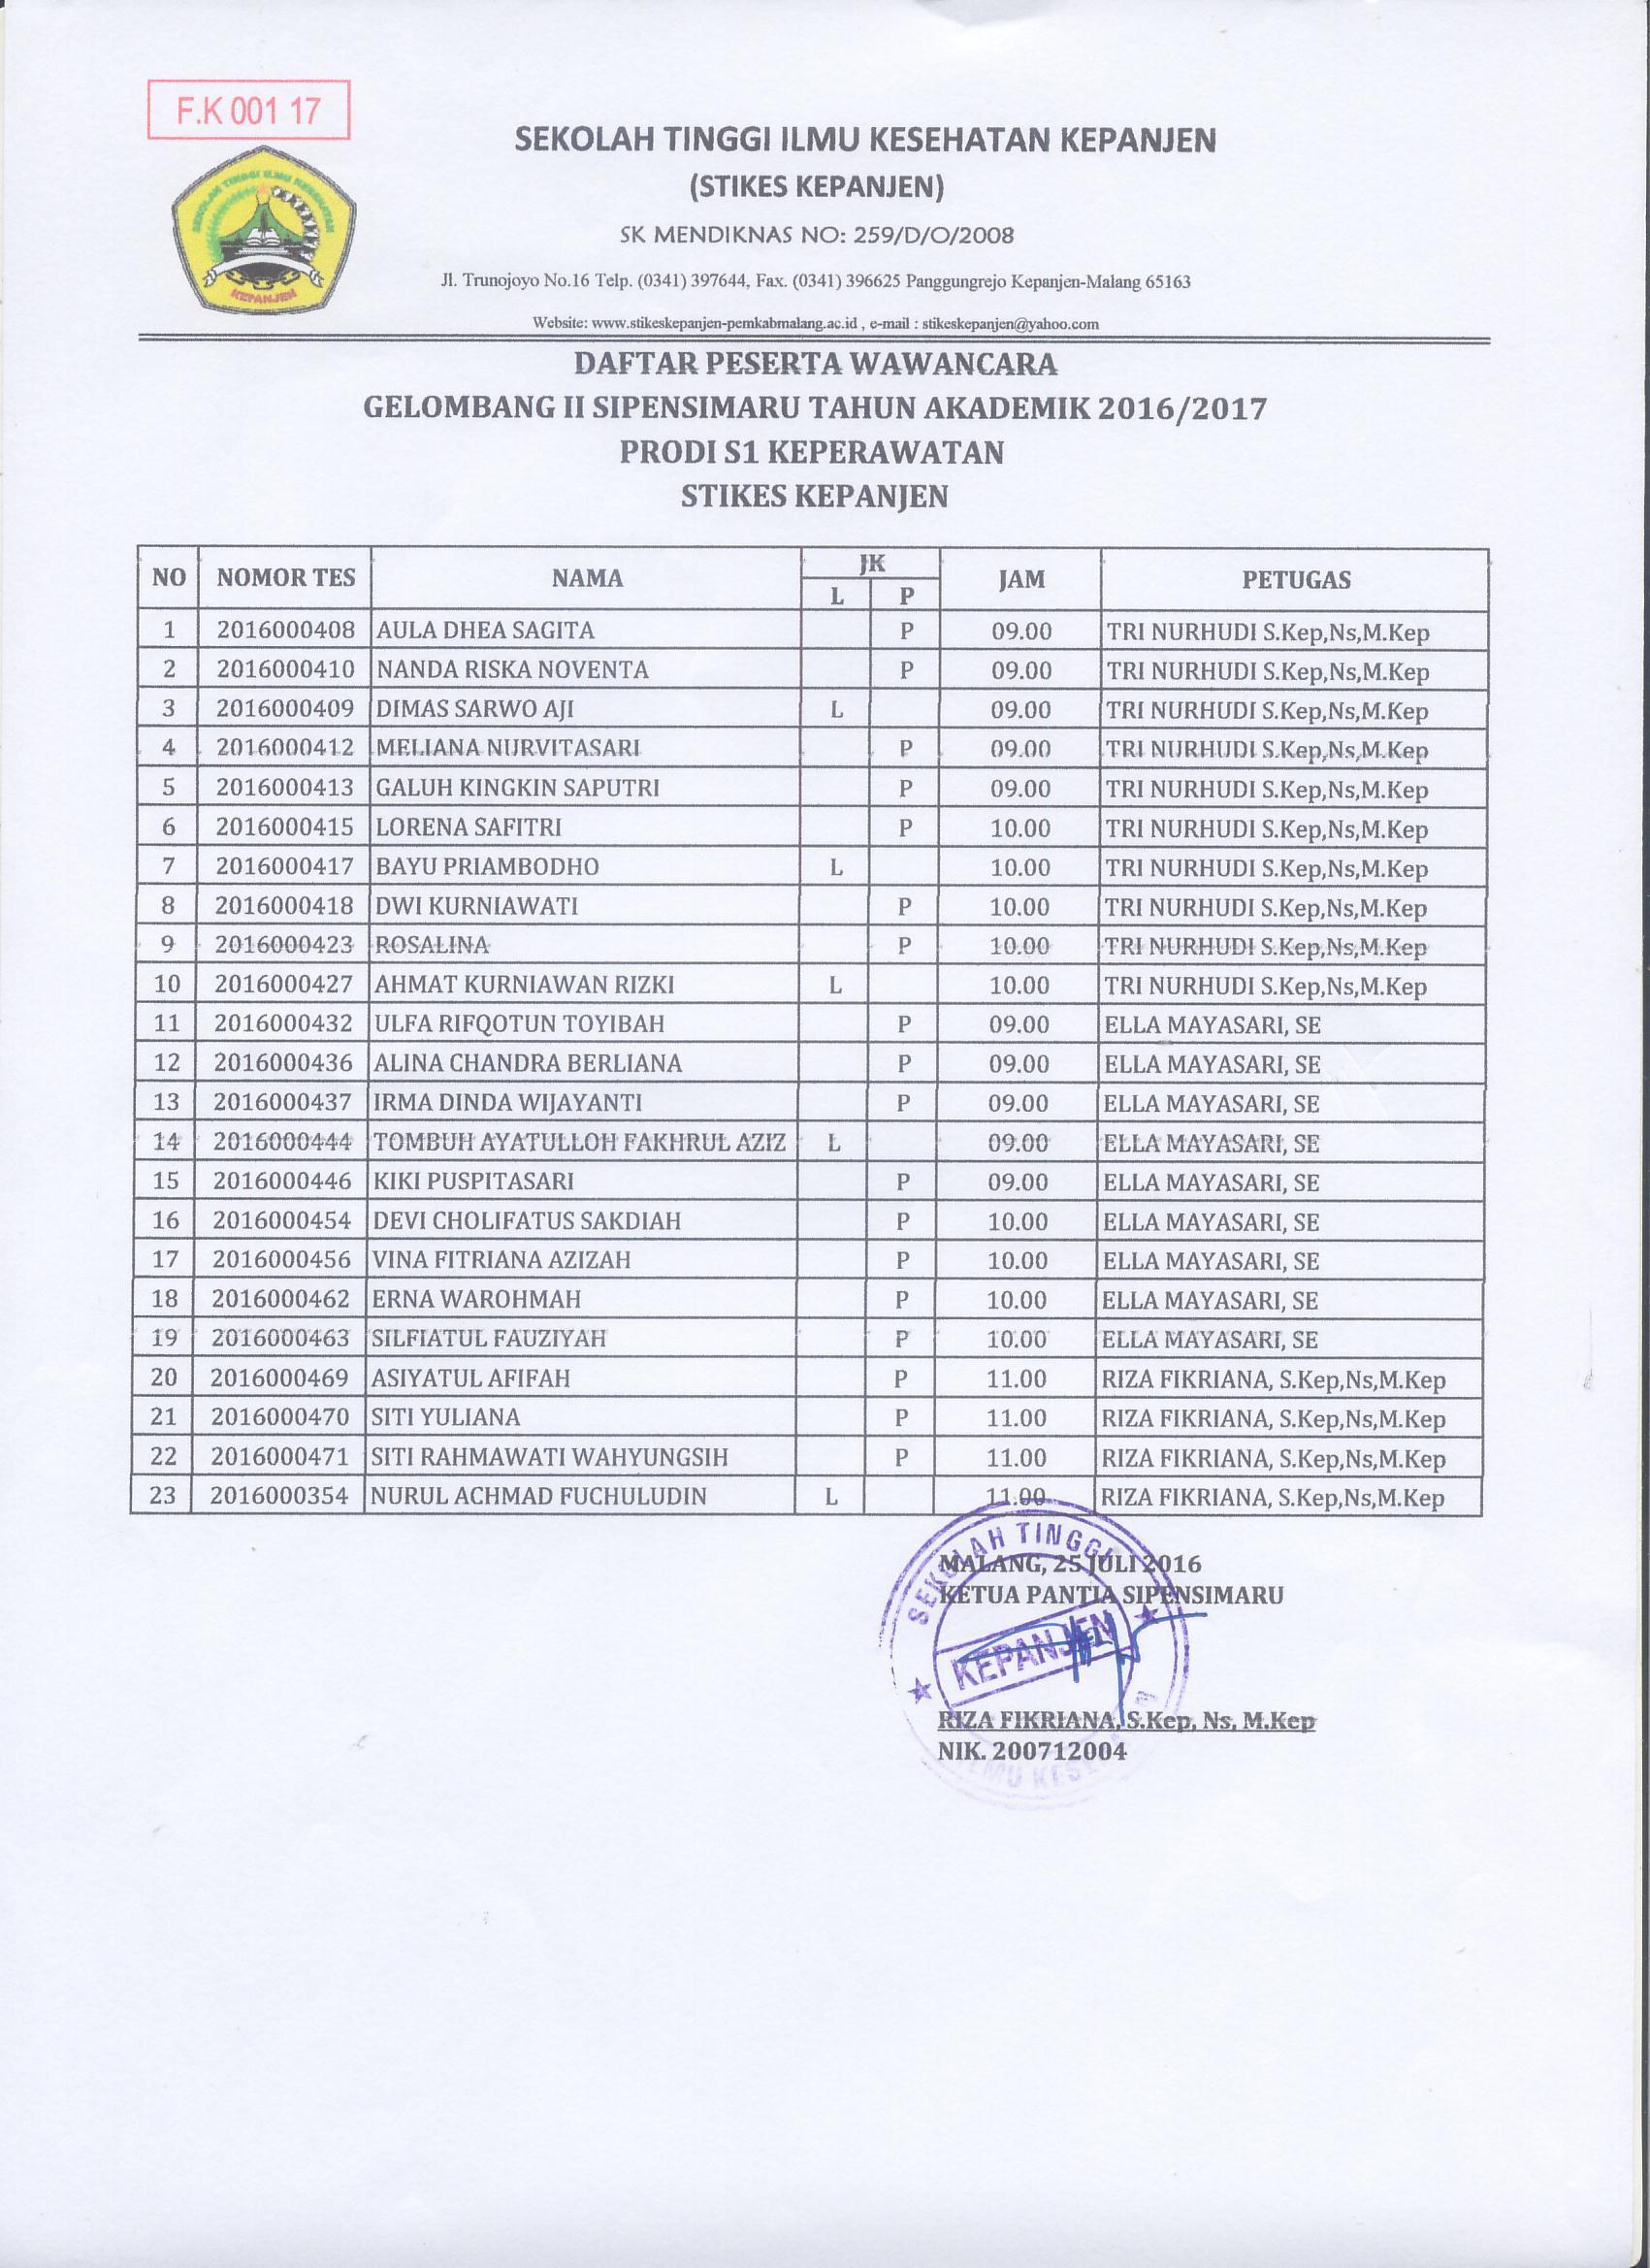 Daftar Peserta Wawancara Gelombang II Sipensimaru Tahun Akademik 2016/2017 Prodi S1 Keperawatan